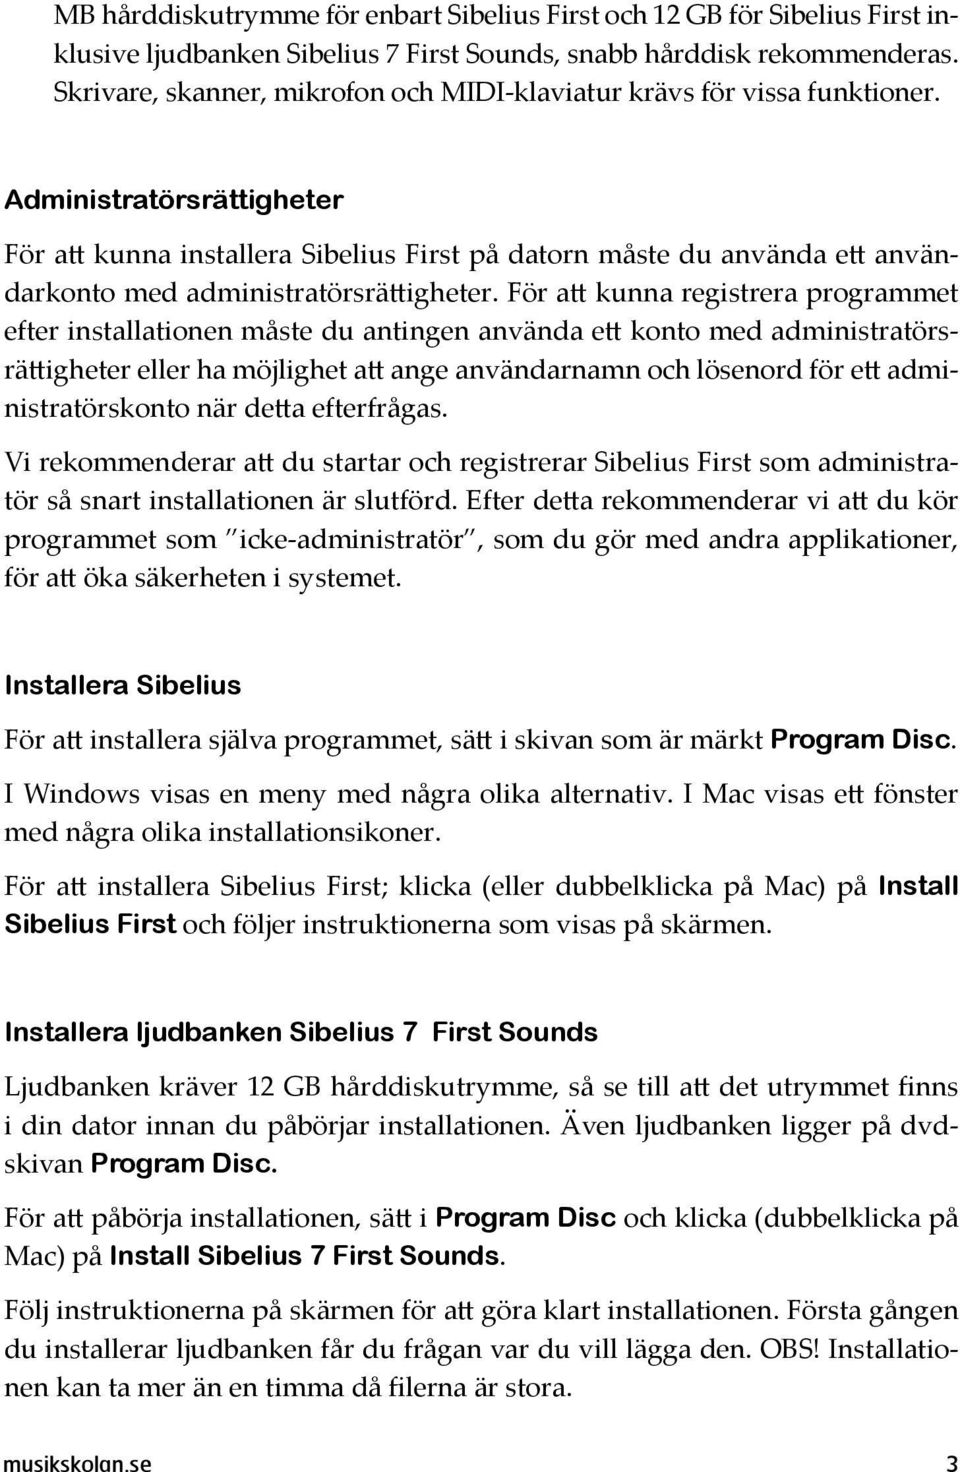 Administratörsrättigheter För att kunna installera Sibelius First på datorn måste du använda ett användarkonto med administratörsrättigheter.